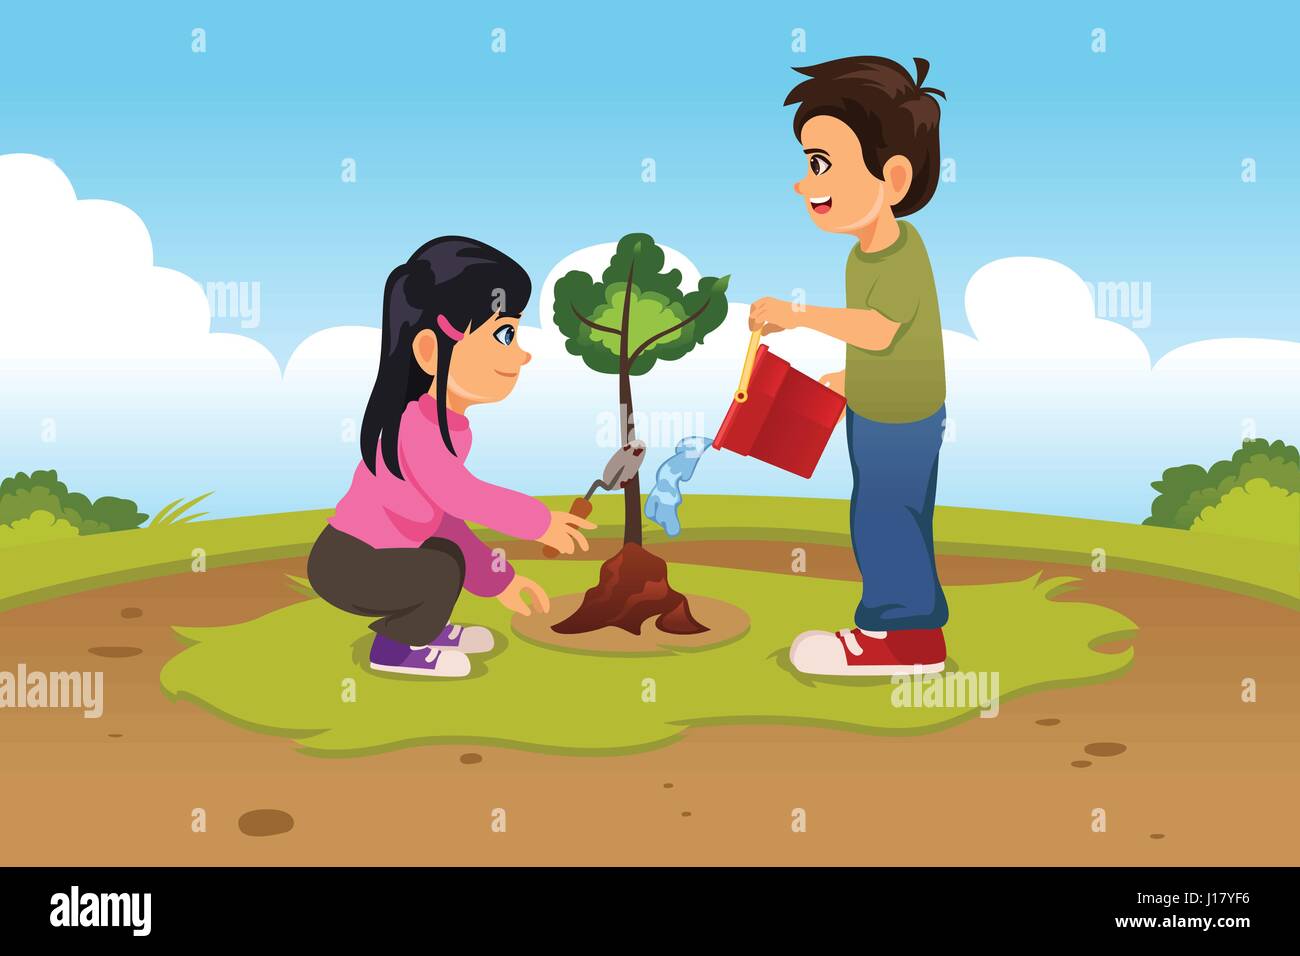 Eine Vektor-Illustration der Kinder Pflanzen und Gießen einen Baum Stock Vektor